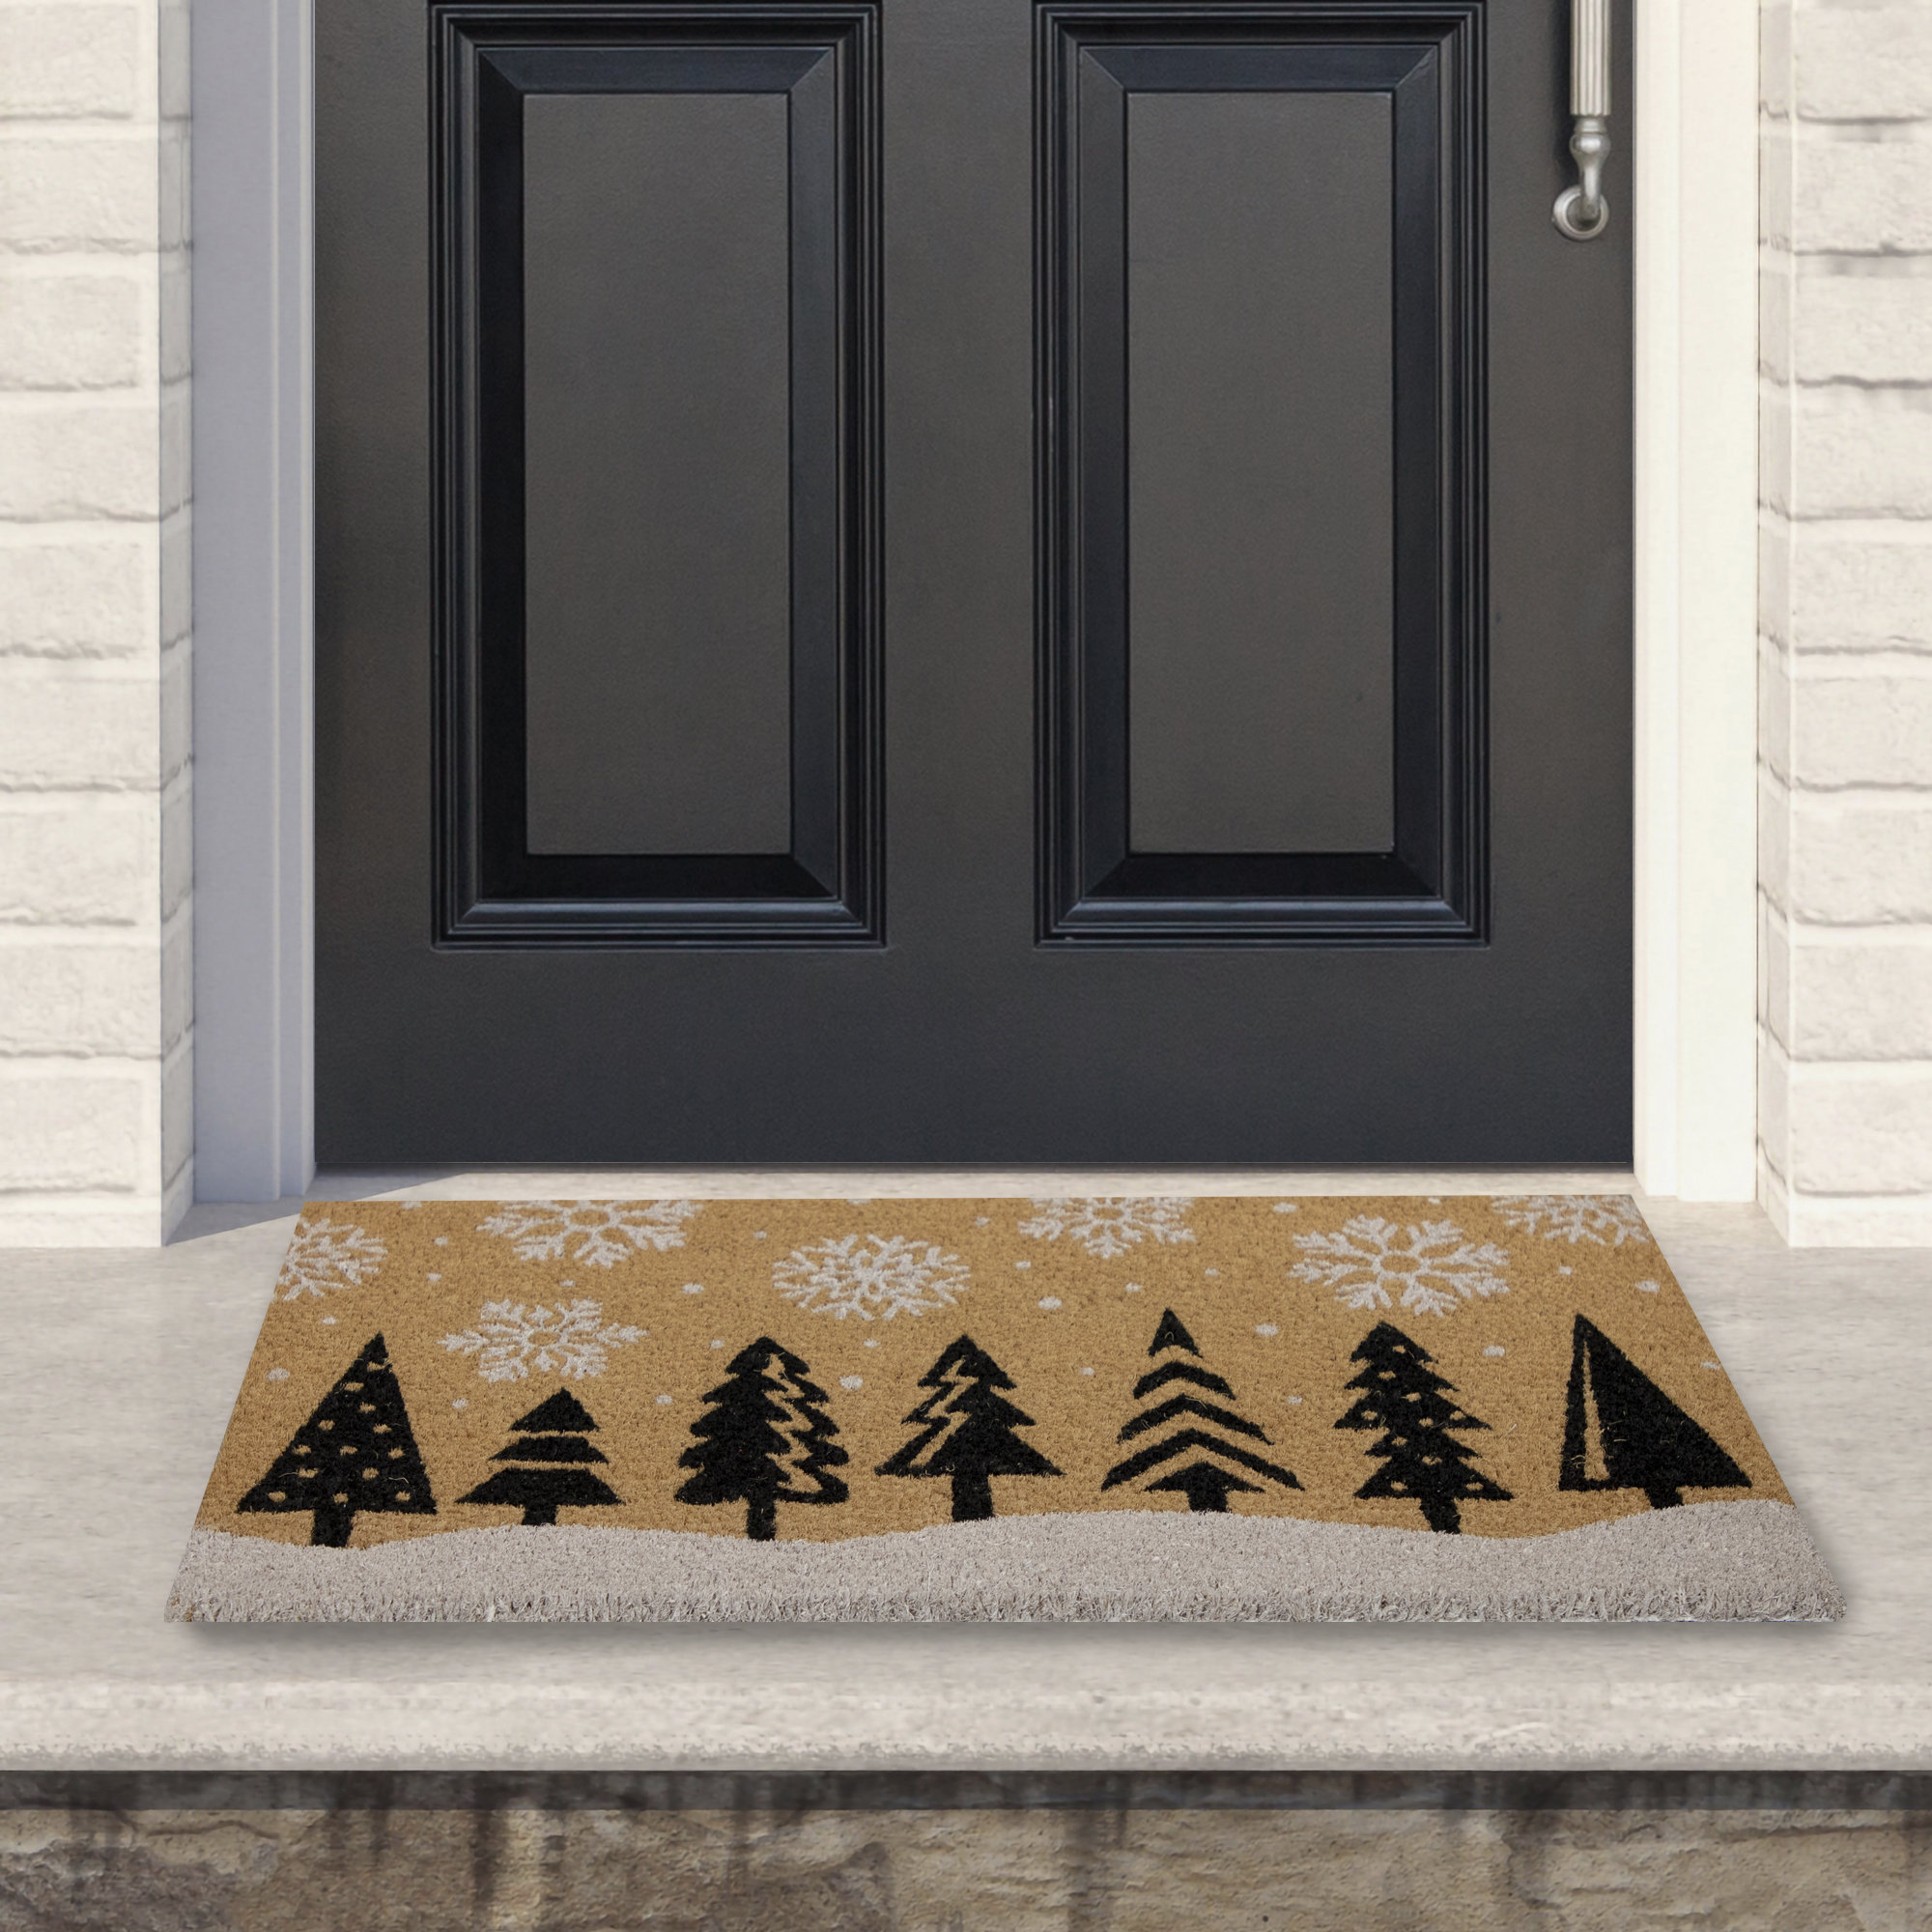 Snowflake Home Coir Winter Doormat 30 X 18 Indoor Outdoor Briarwood Lane  : Target